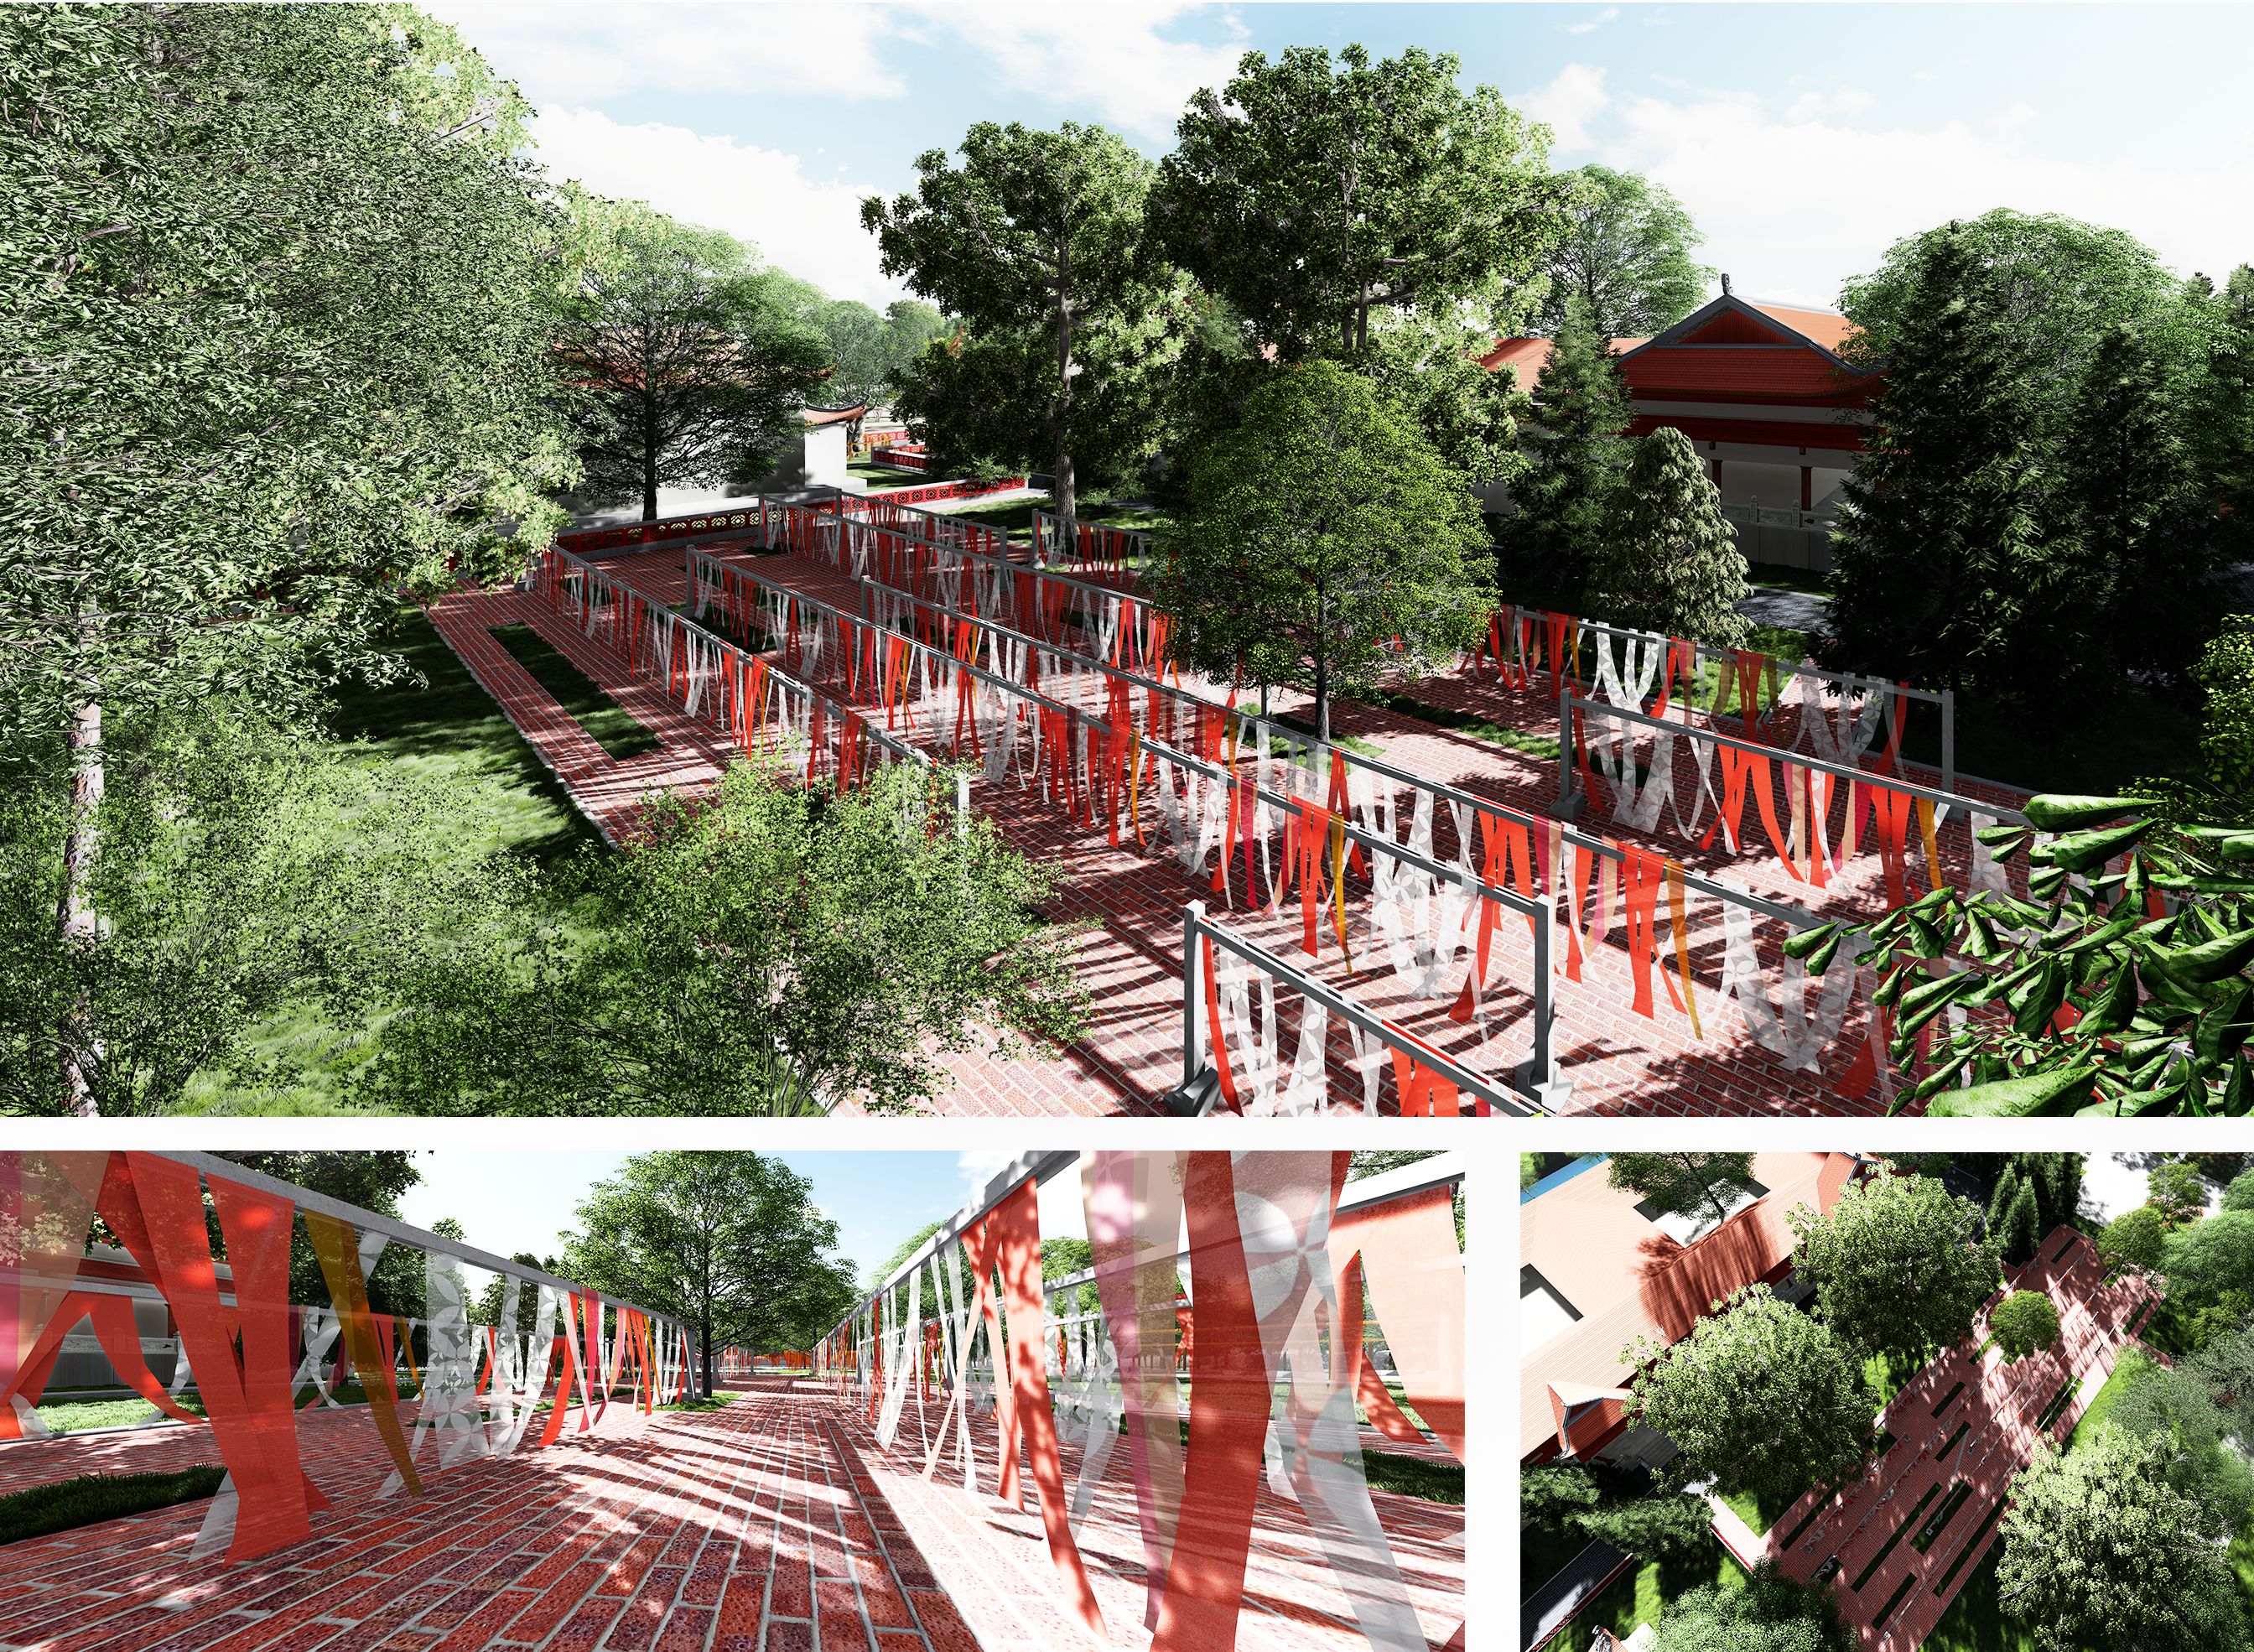 Thiết kế Đồ Án Kiến Trúc tại Bình Định Thiết kế kiến trúc cảnh quan cụm di tích lịch sử Bảo Tàng Quang Trung 1584495763 5